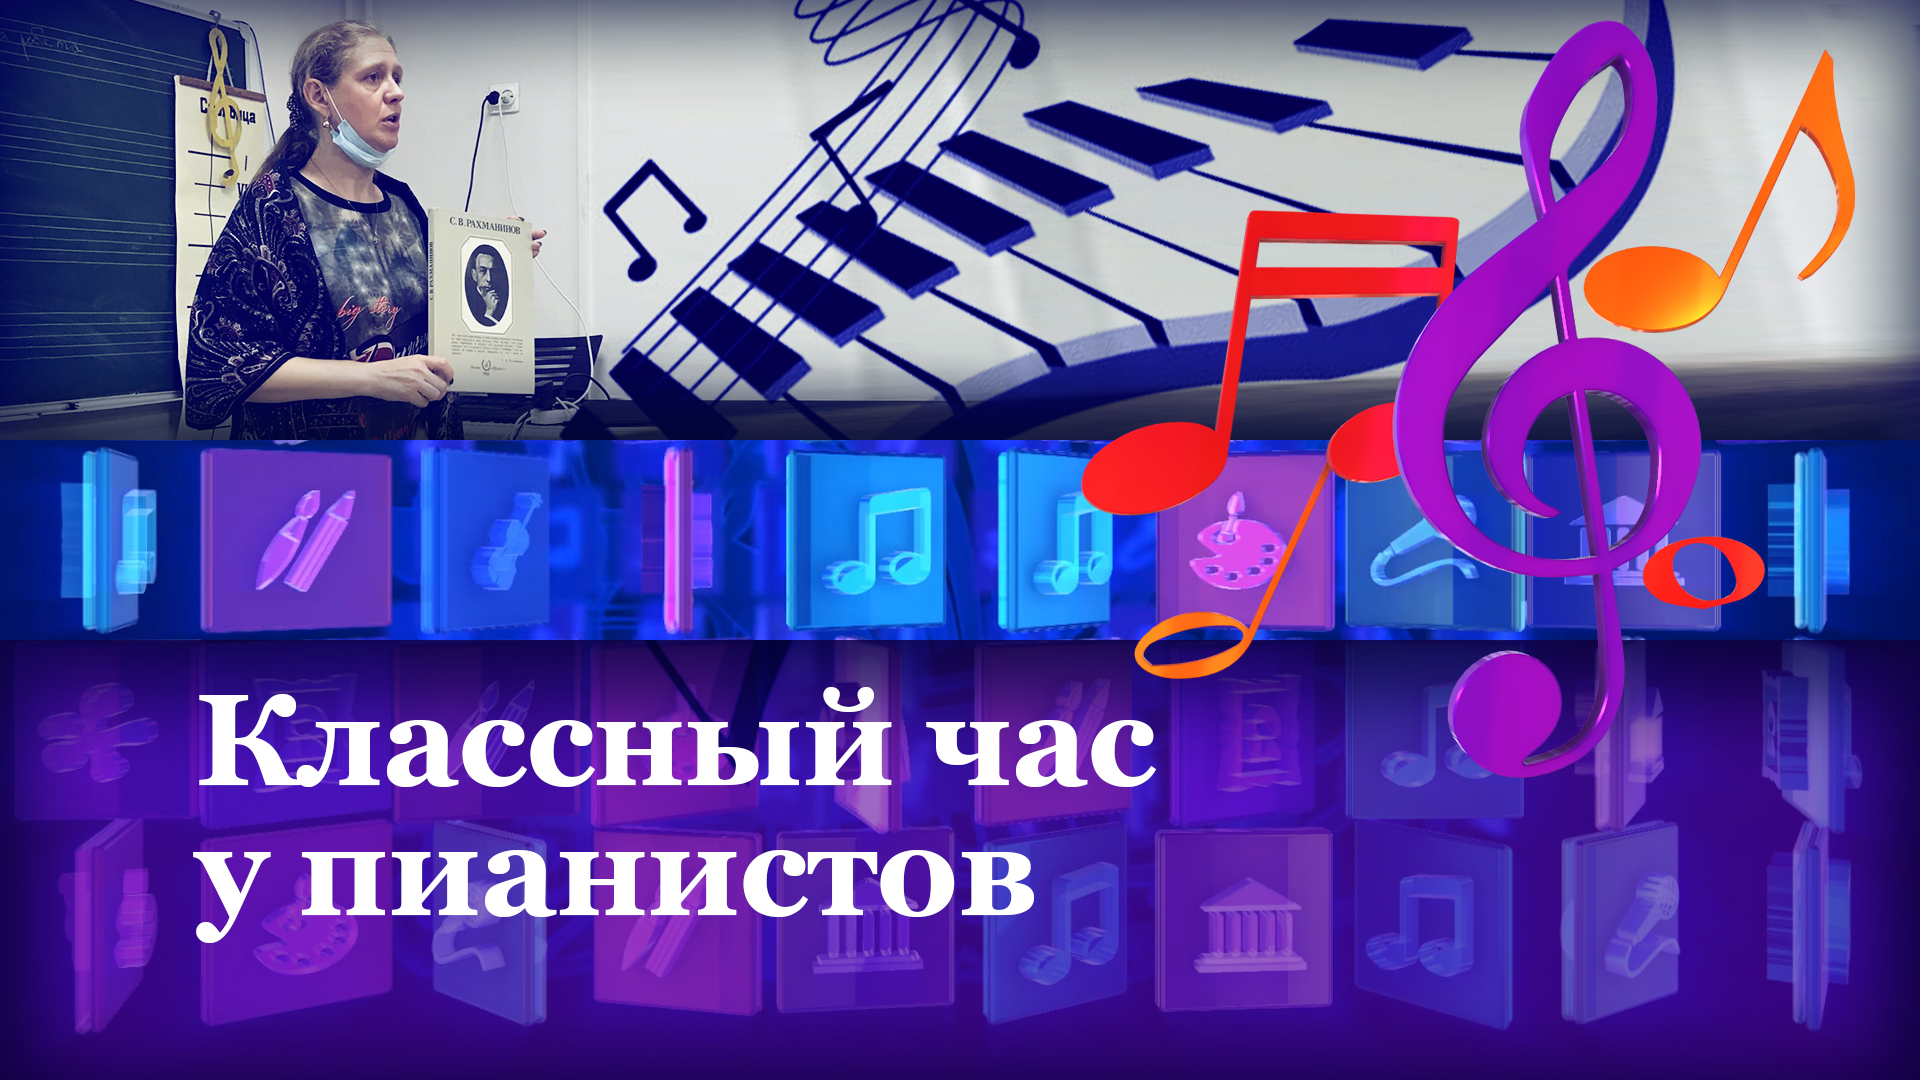 Гений русской музыки